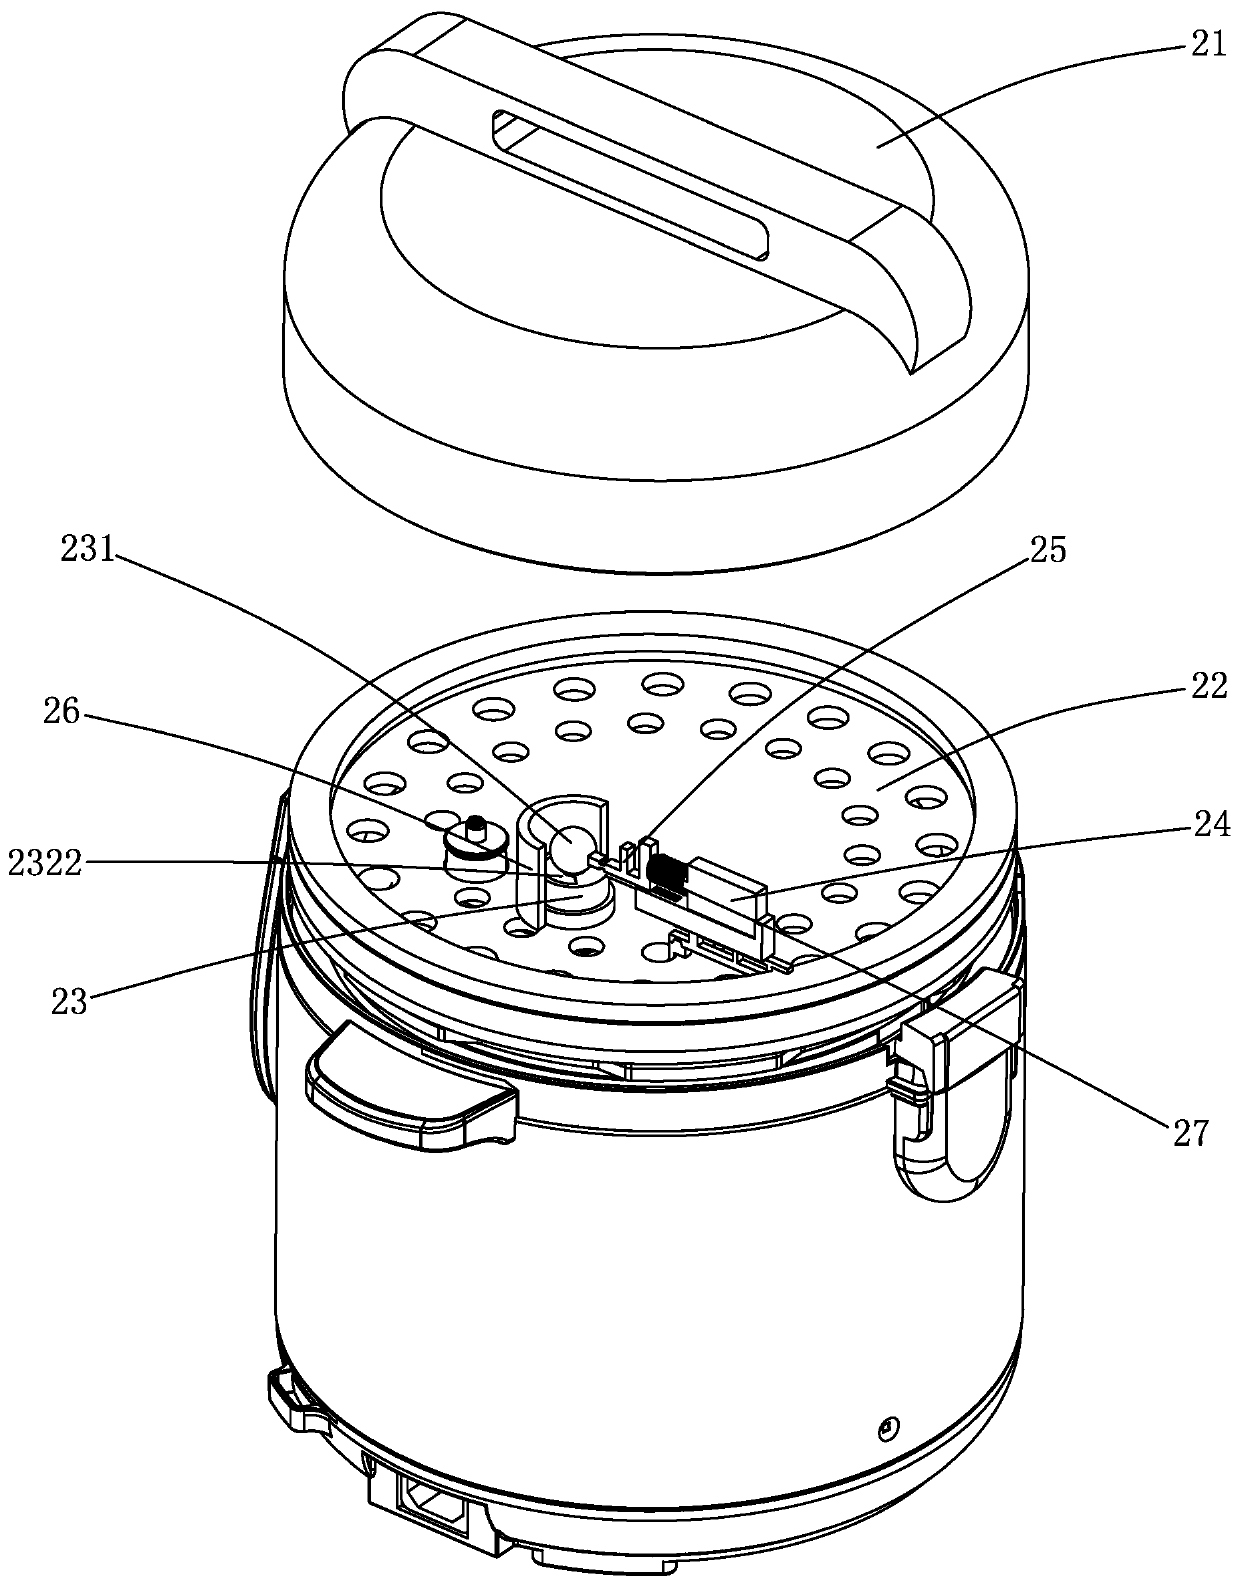 Pressure control device of micro-pressure electric cooker and micro-pressure electric cooker